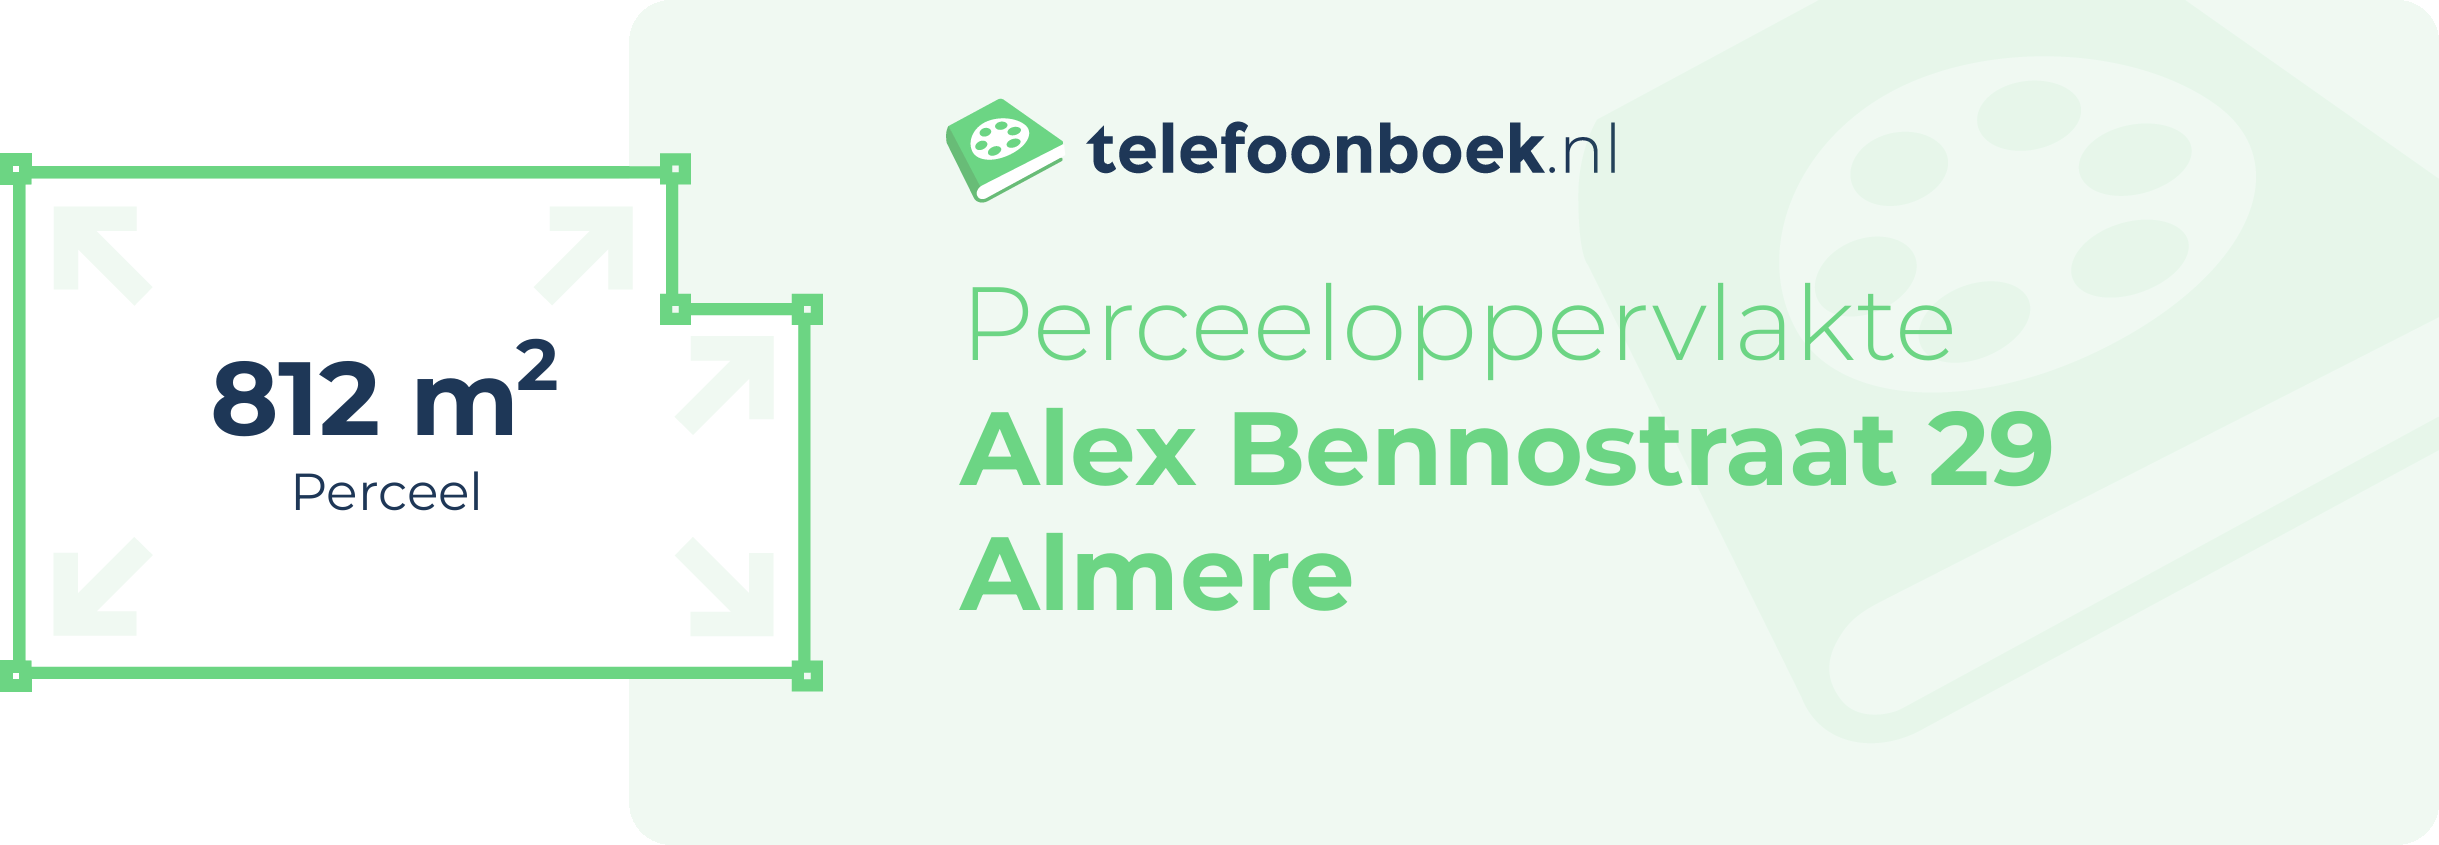 Perceeloppervlakte Alex Bennostraat 29 Almere